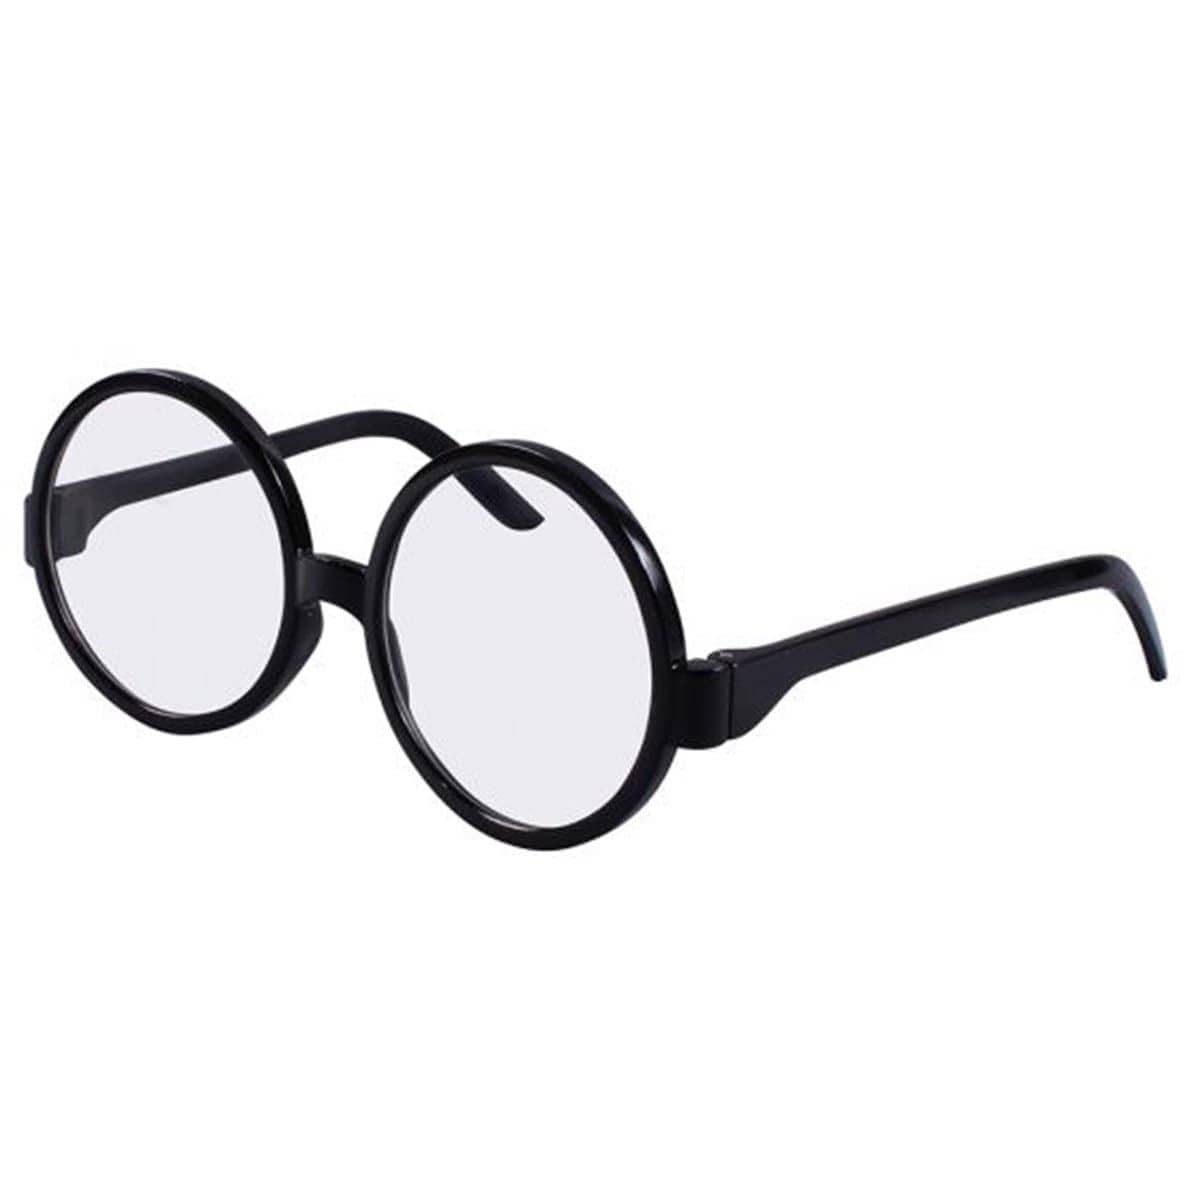 Les lunettes Harry Potter